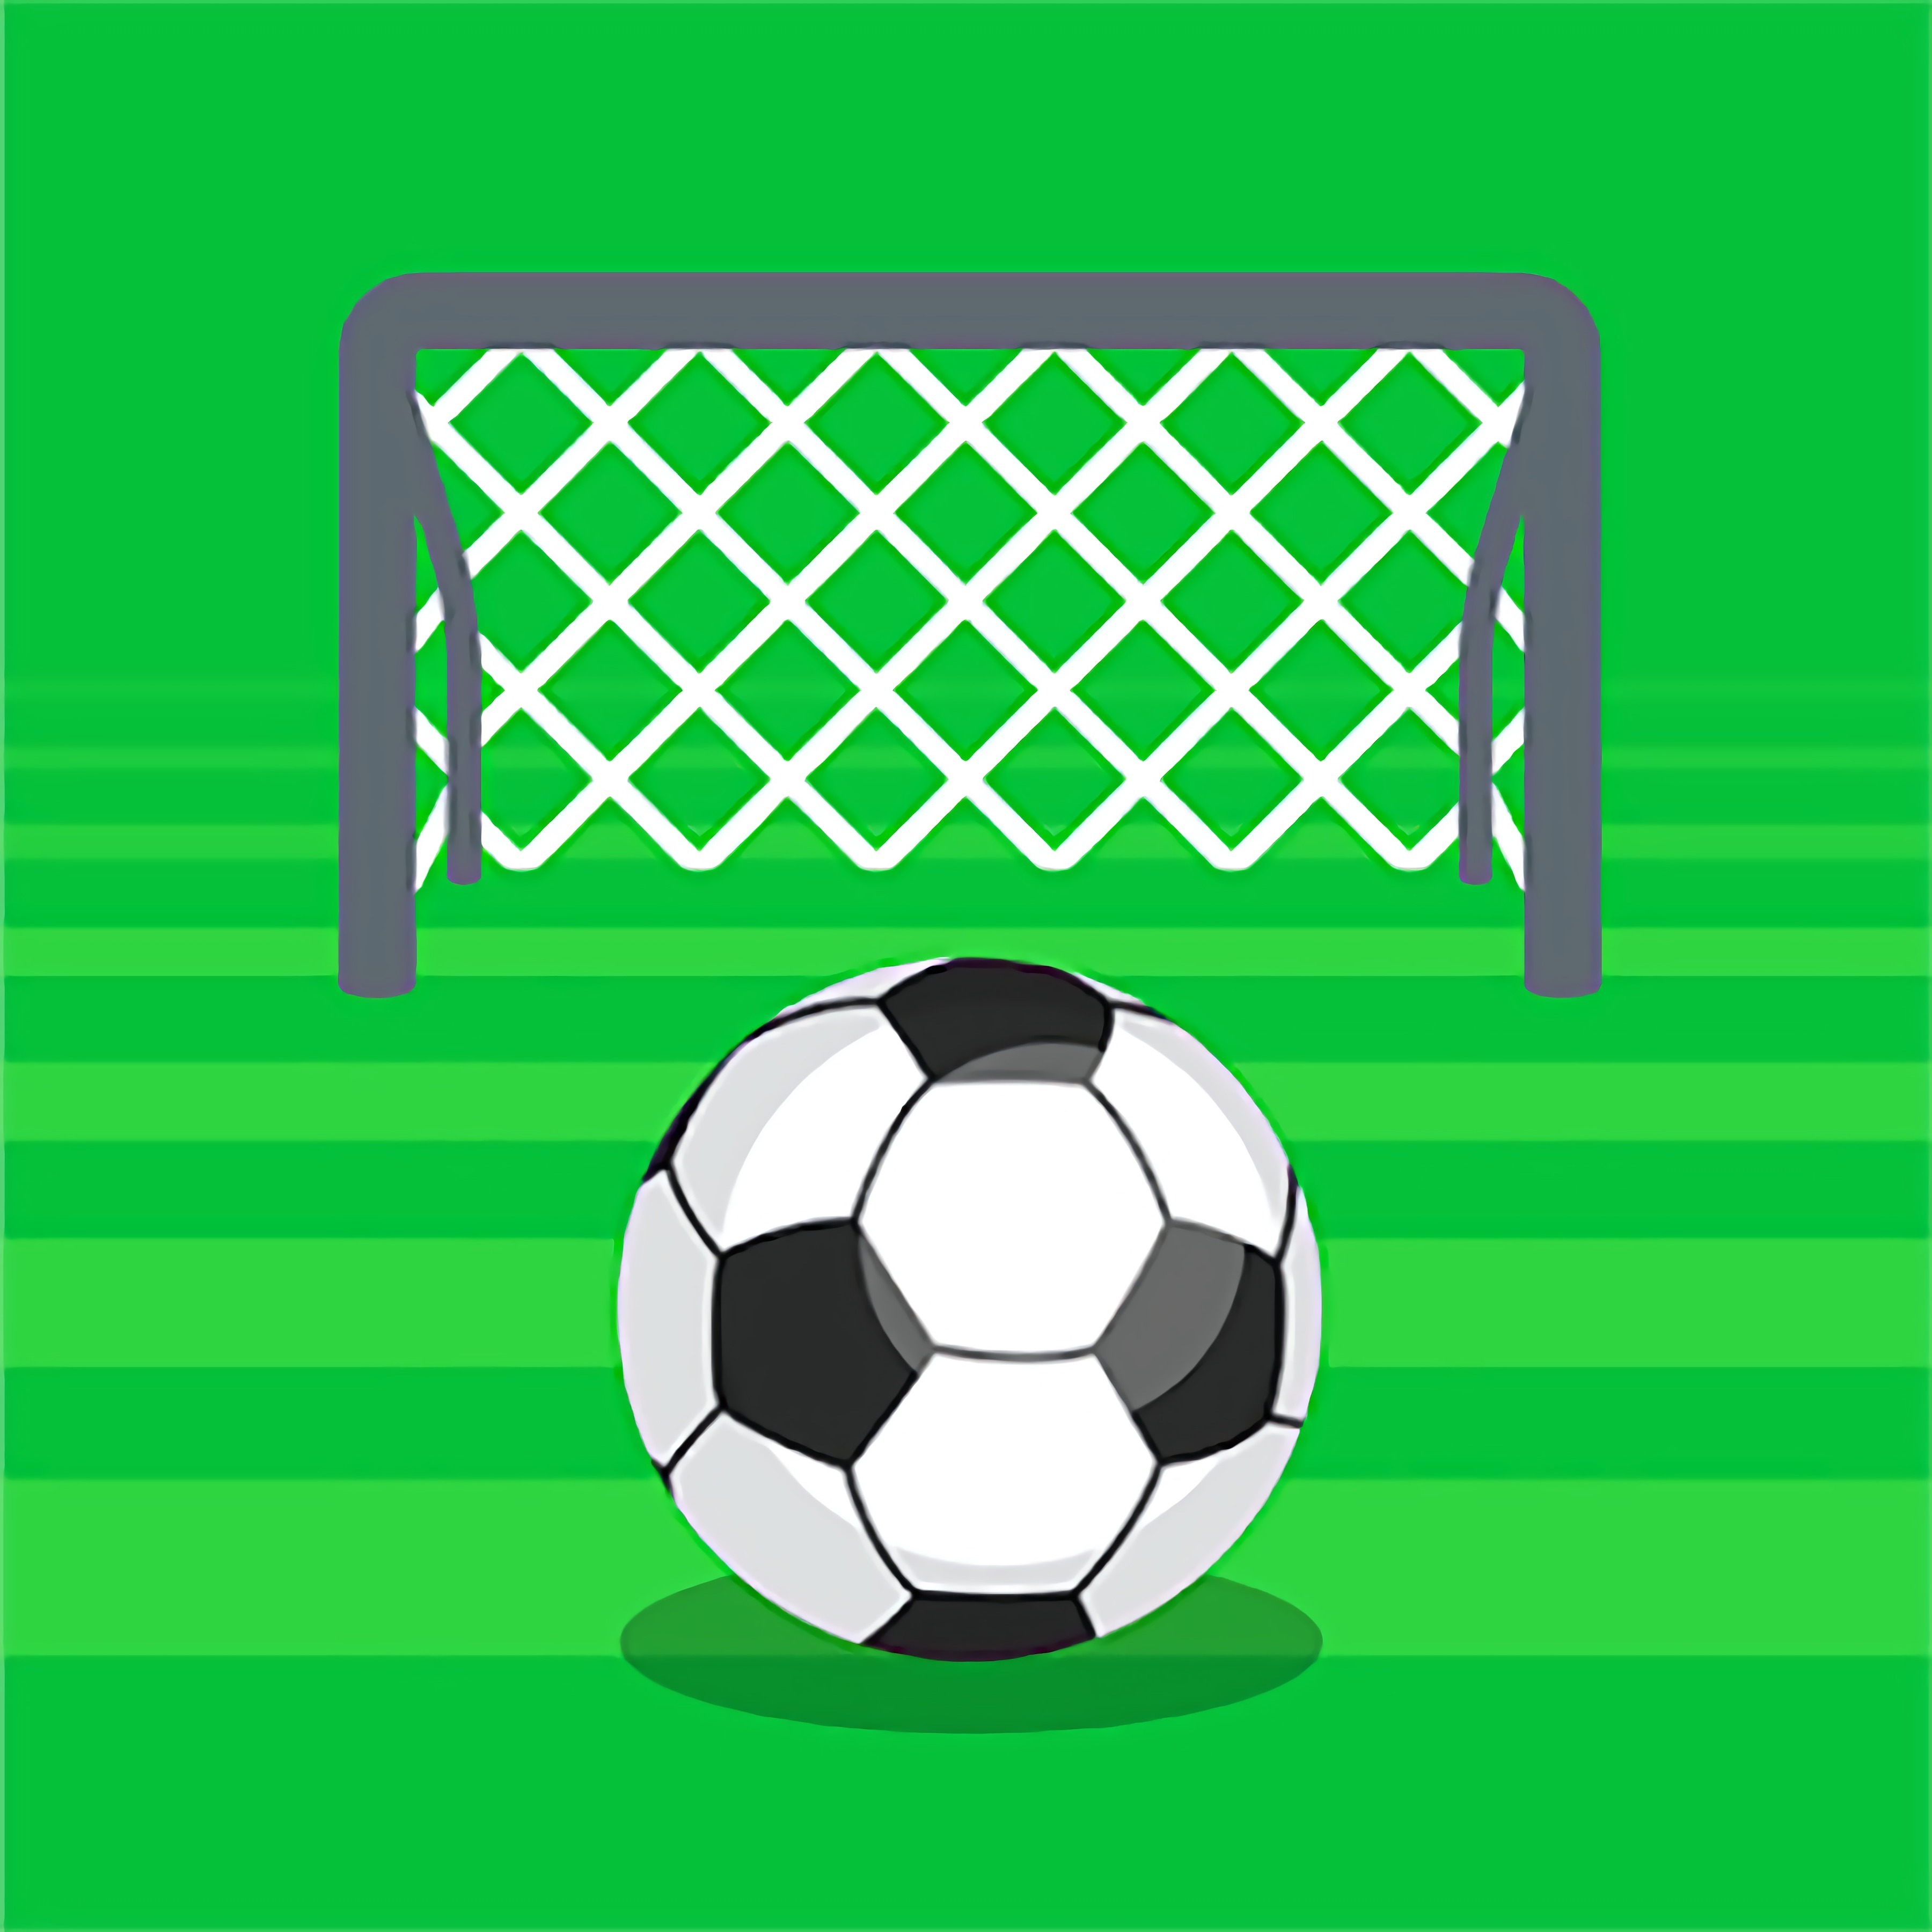 Juegos de Fútbol - Juega en línea en Desura